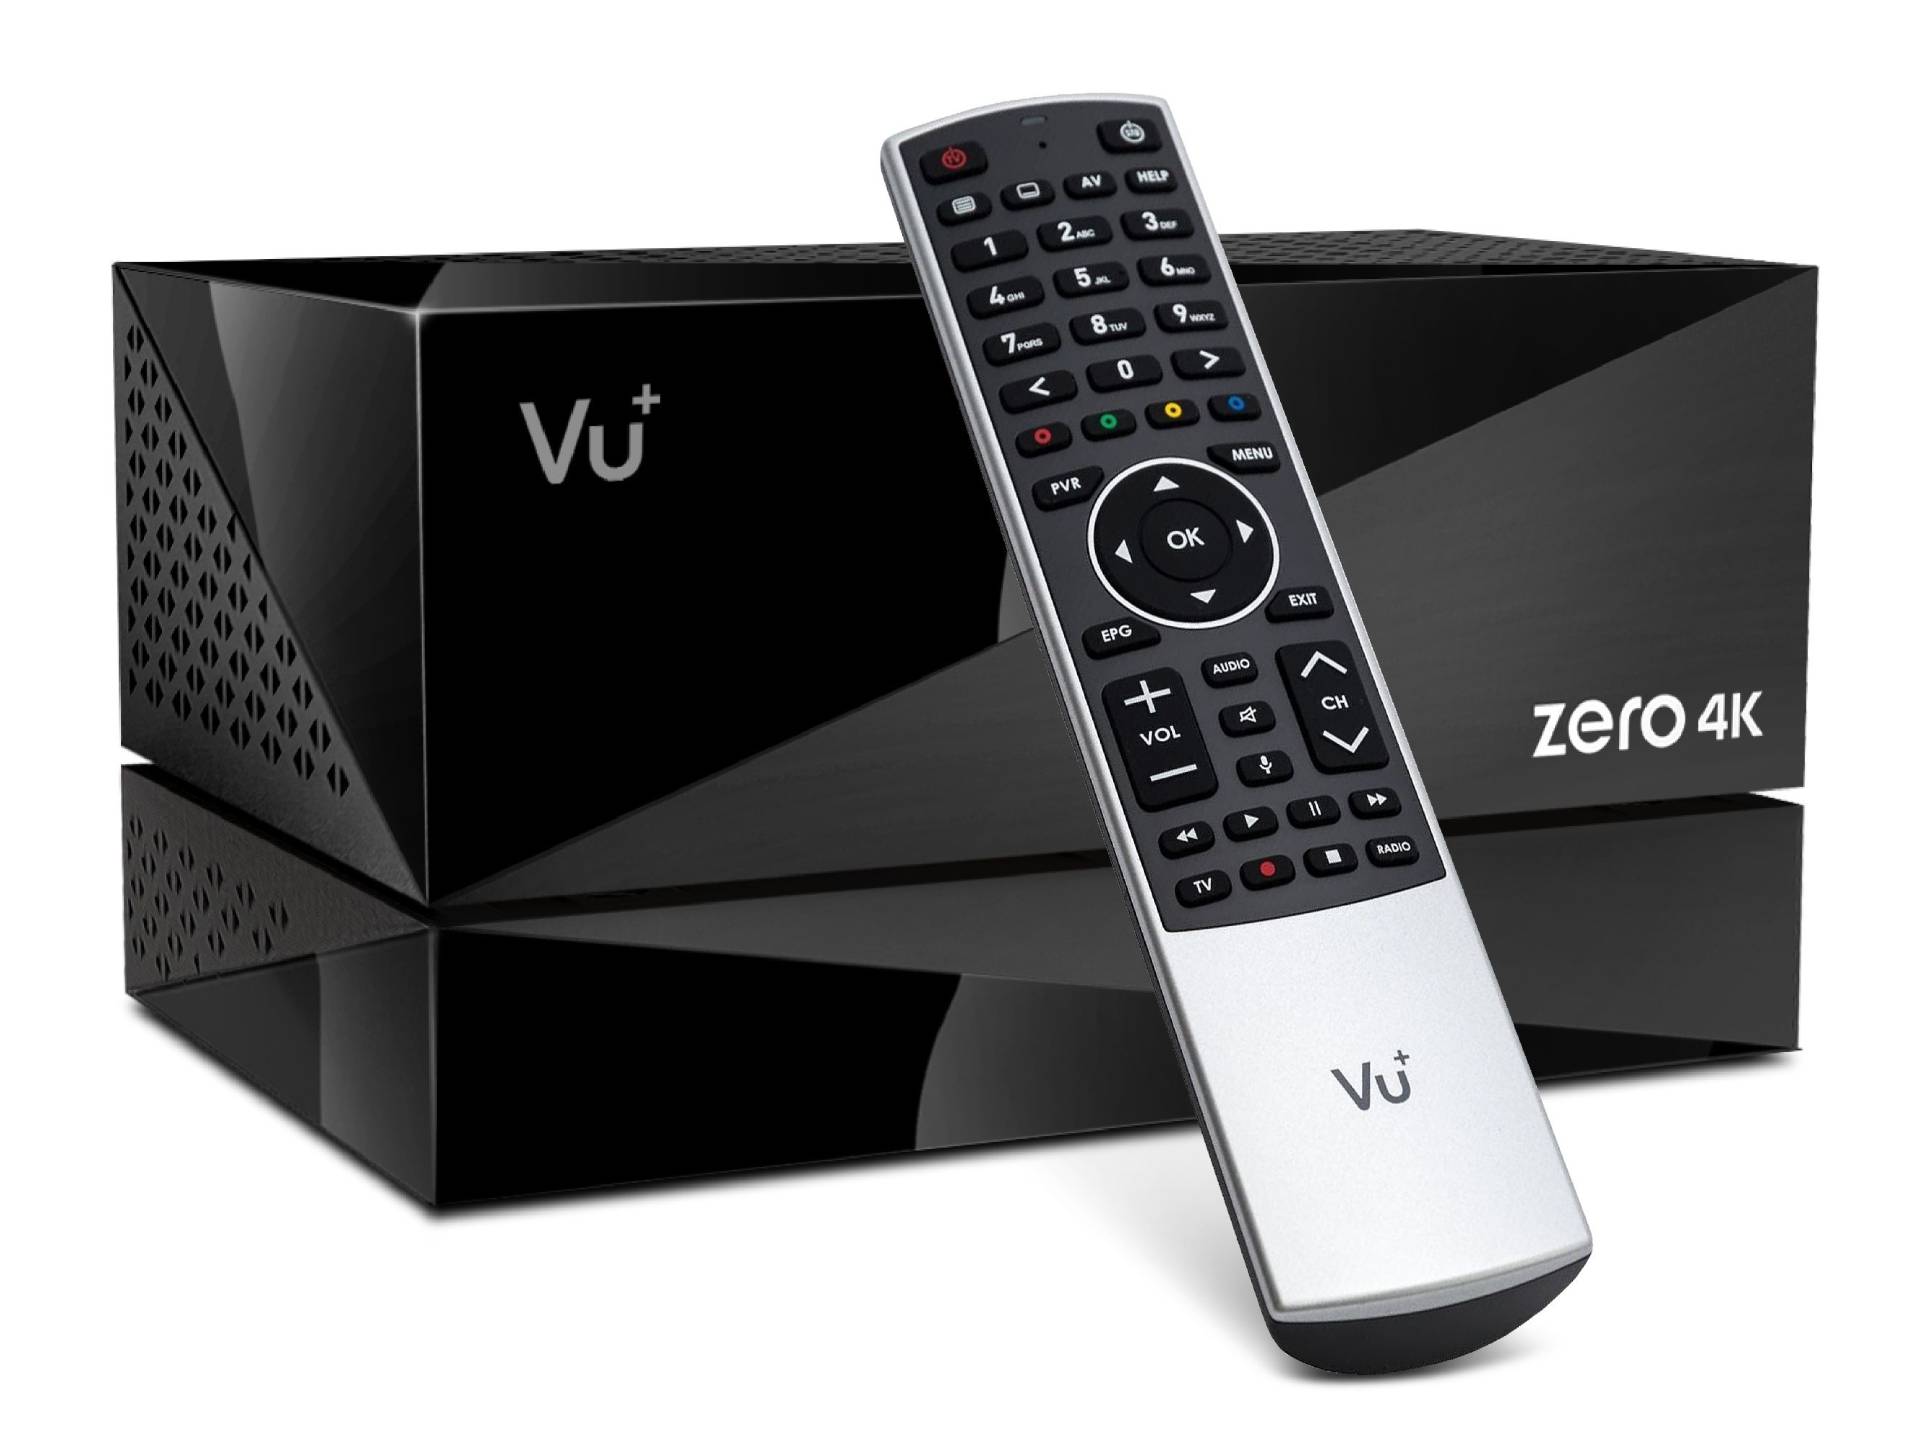 VU+ Zero 4K BT 1x DVB-S2X MS Tuner Linux Receiver UHD 2160p - incl. PVR-Kit 4 TB HDD